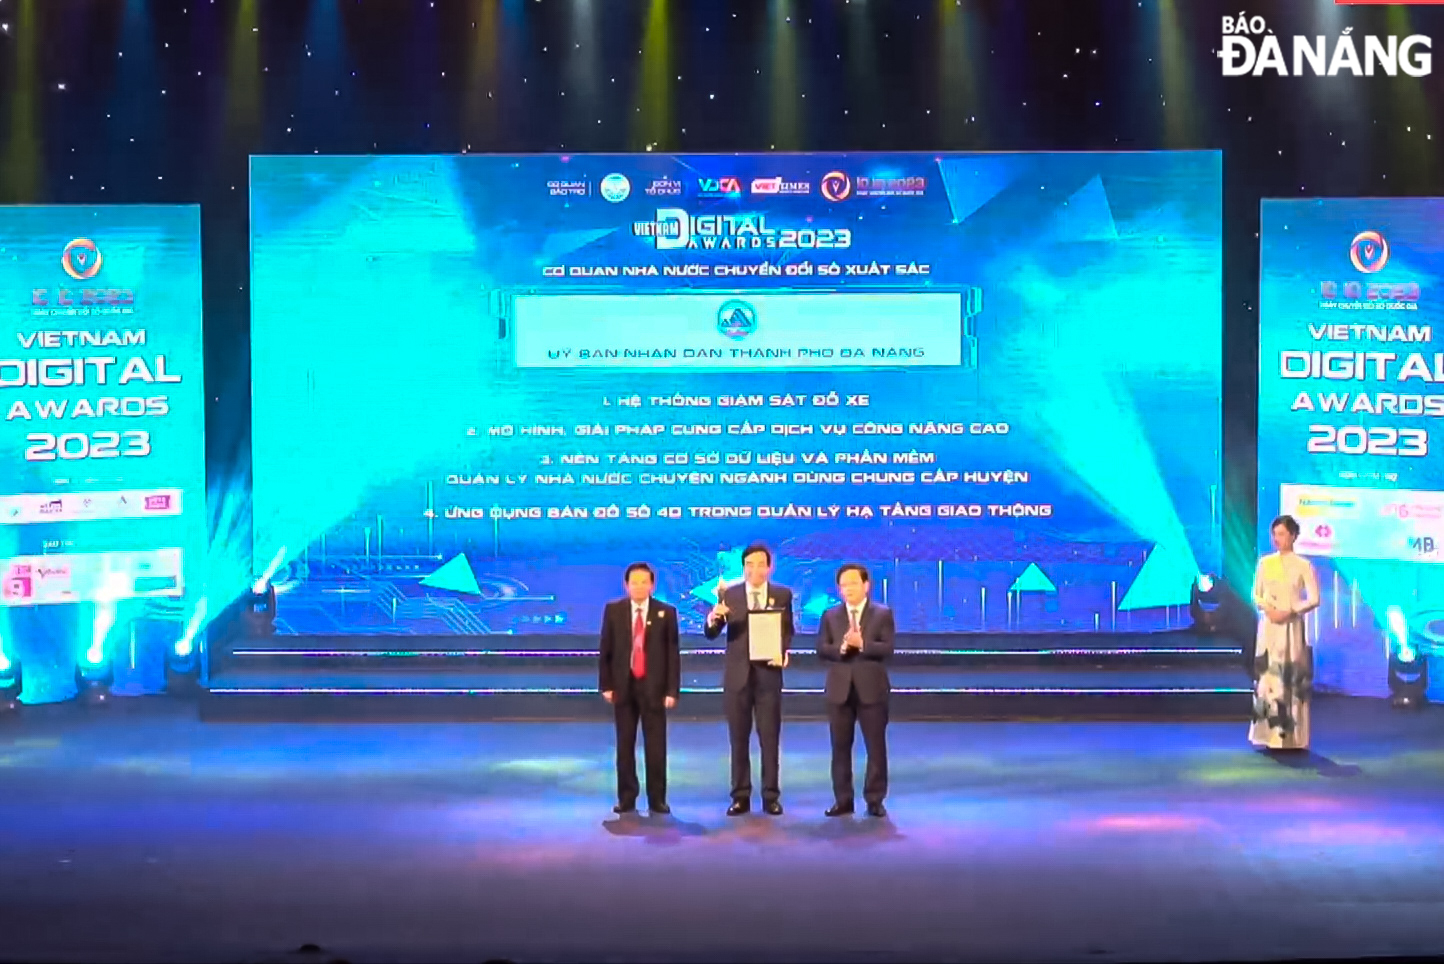 Đà Nẵng nhận giải thưởng cơ quan Nhà nước chuyển đổi số xuất sắc năm 2023